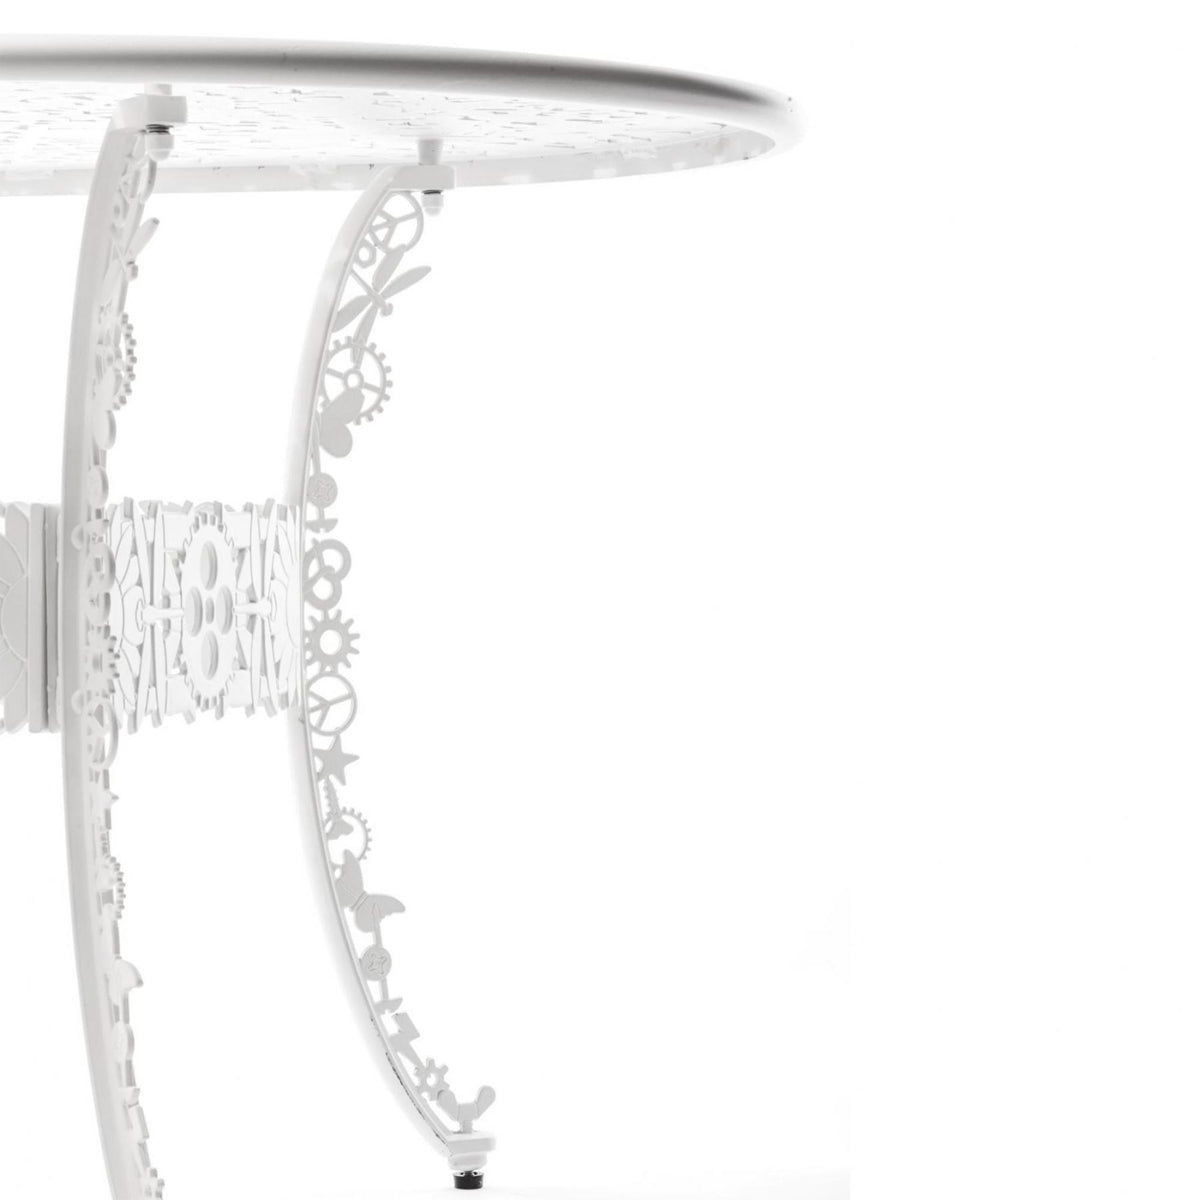 Seletti X Studio Job Industry Garden Cast Aluminium Oval Table